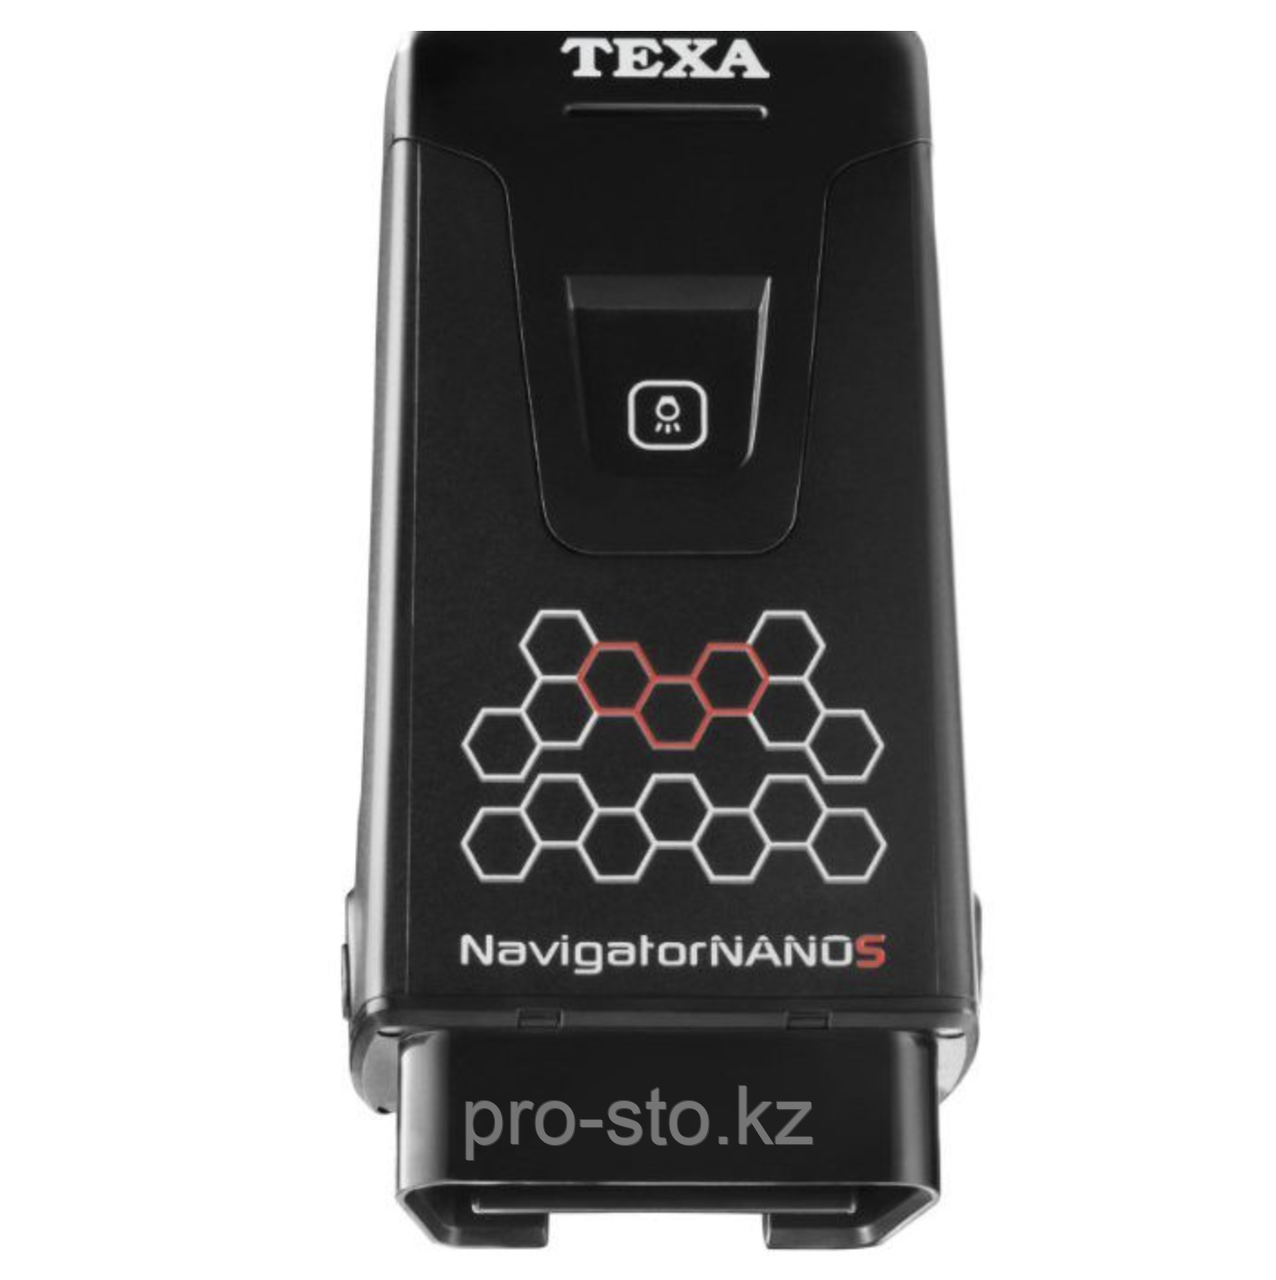 Мультимарочный сканер Texa Navigator NANO S купить